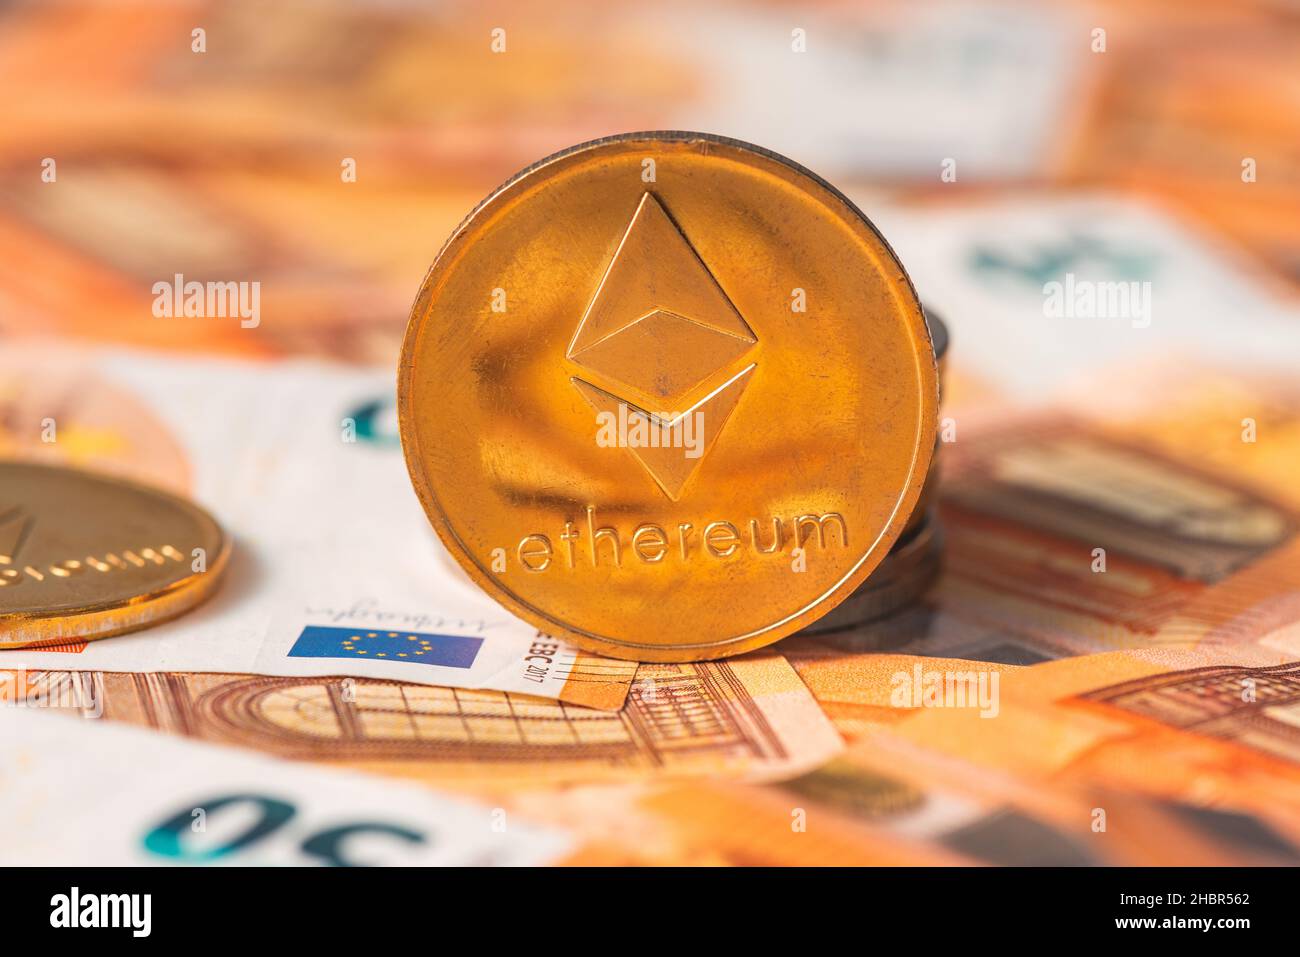 Ethereum monete e banconote in euro per cambio valuta concetto, fuoco selettivo Foto Stock